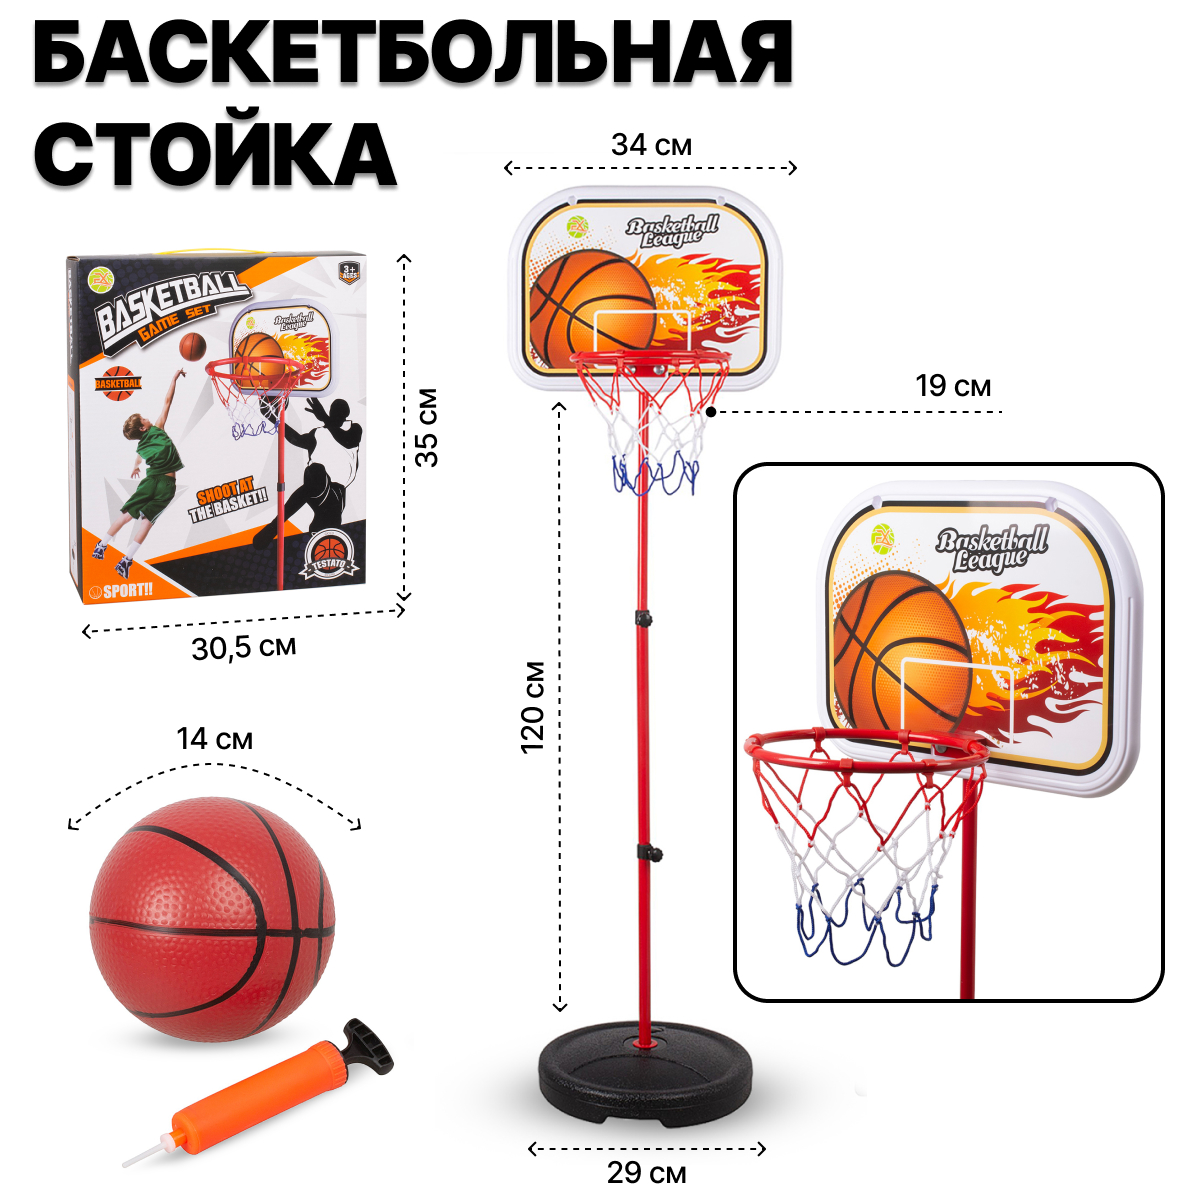 Баскетбольное кольцо FX666-1 на стойке 120 см